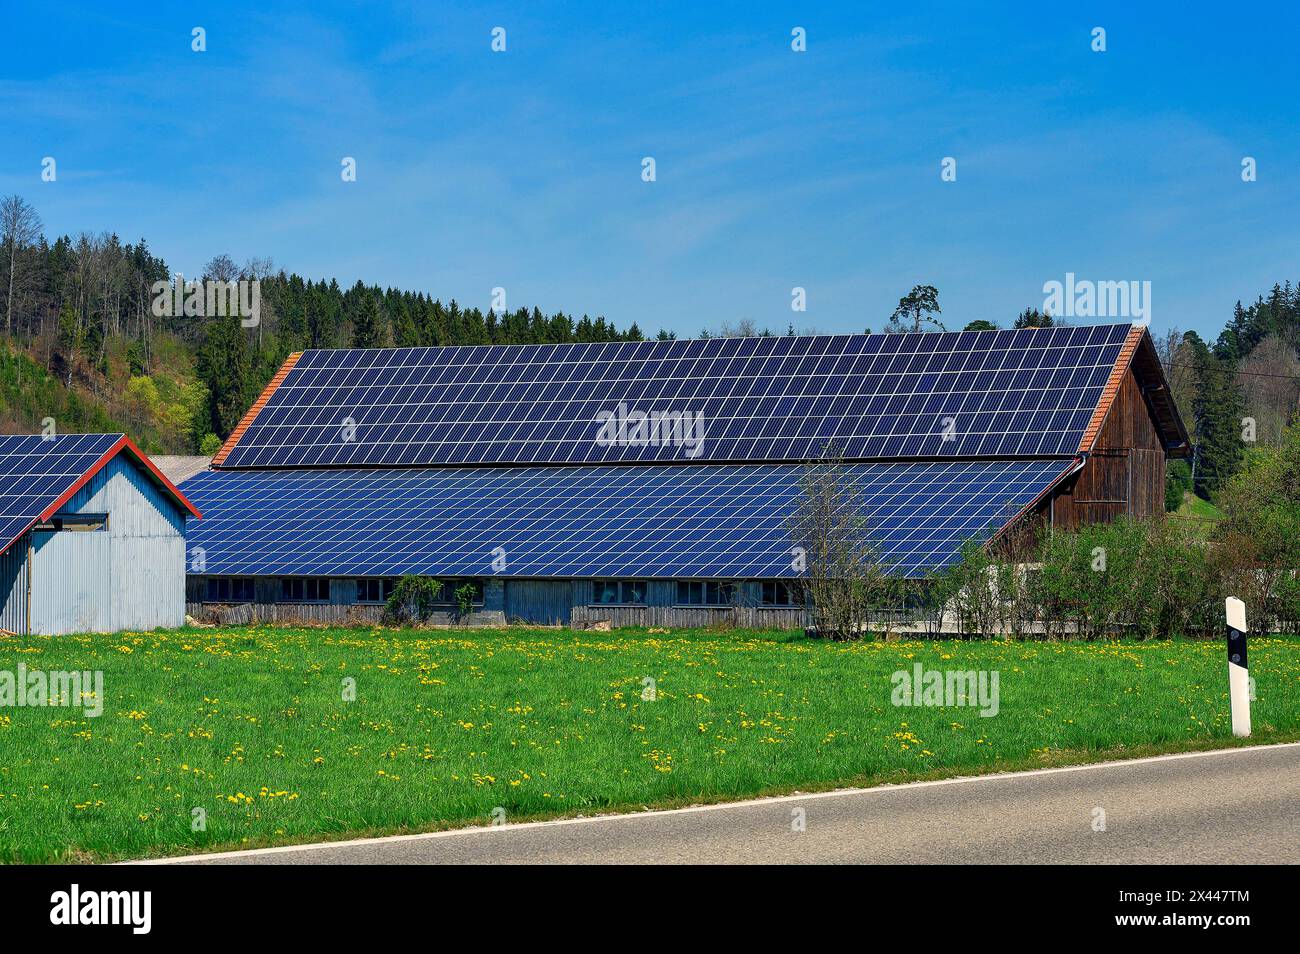 Barns with solar roofs, Allgaeu, Swabia, Bavaria, Germany Stock Photo